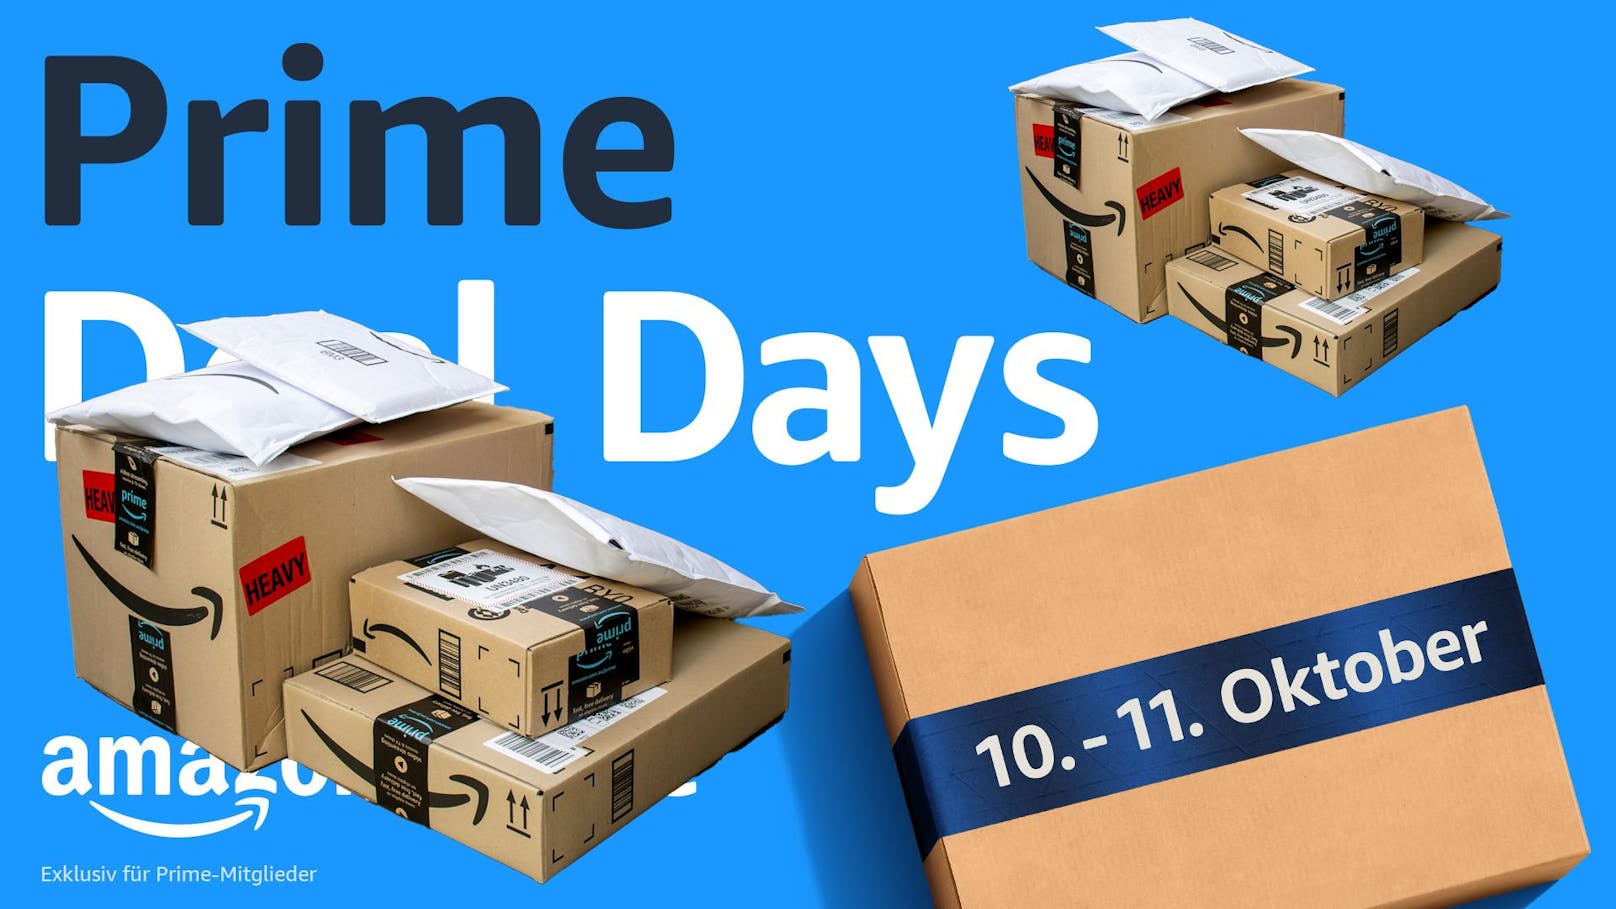 Die Amazon Prime Deal Days waren für das Unternehmen laut eigenen Angaben ein voller Erfolg.